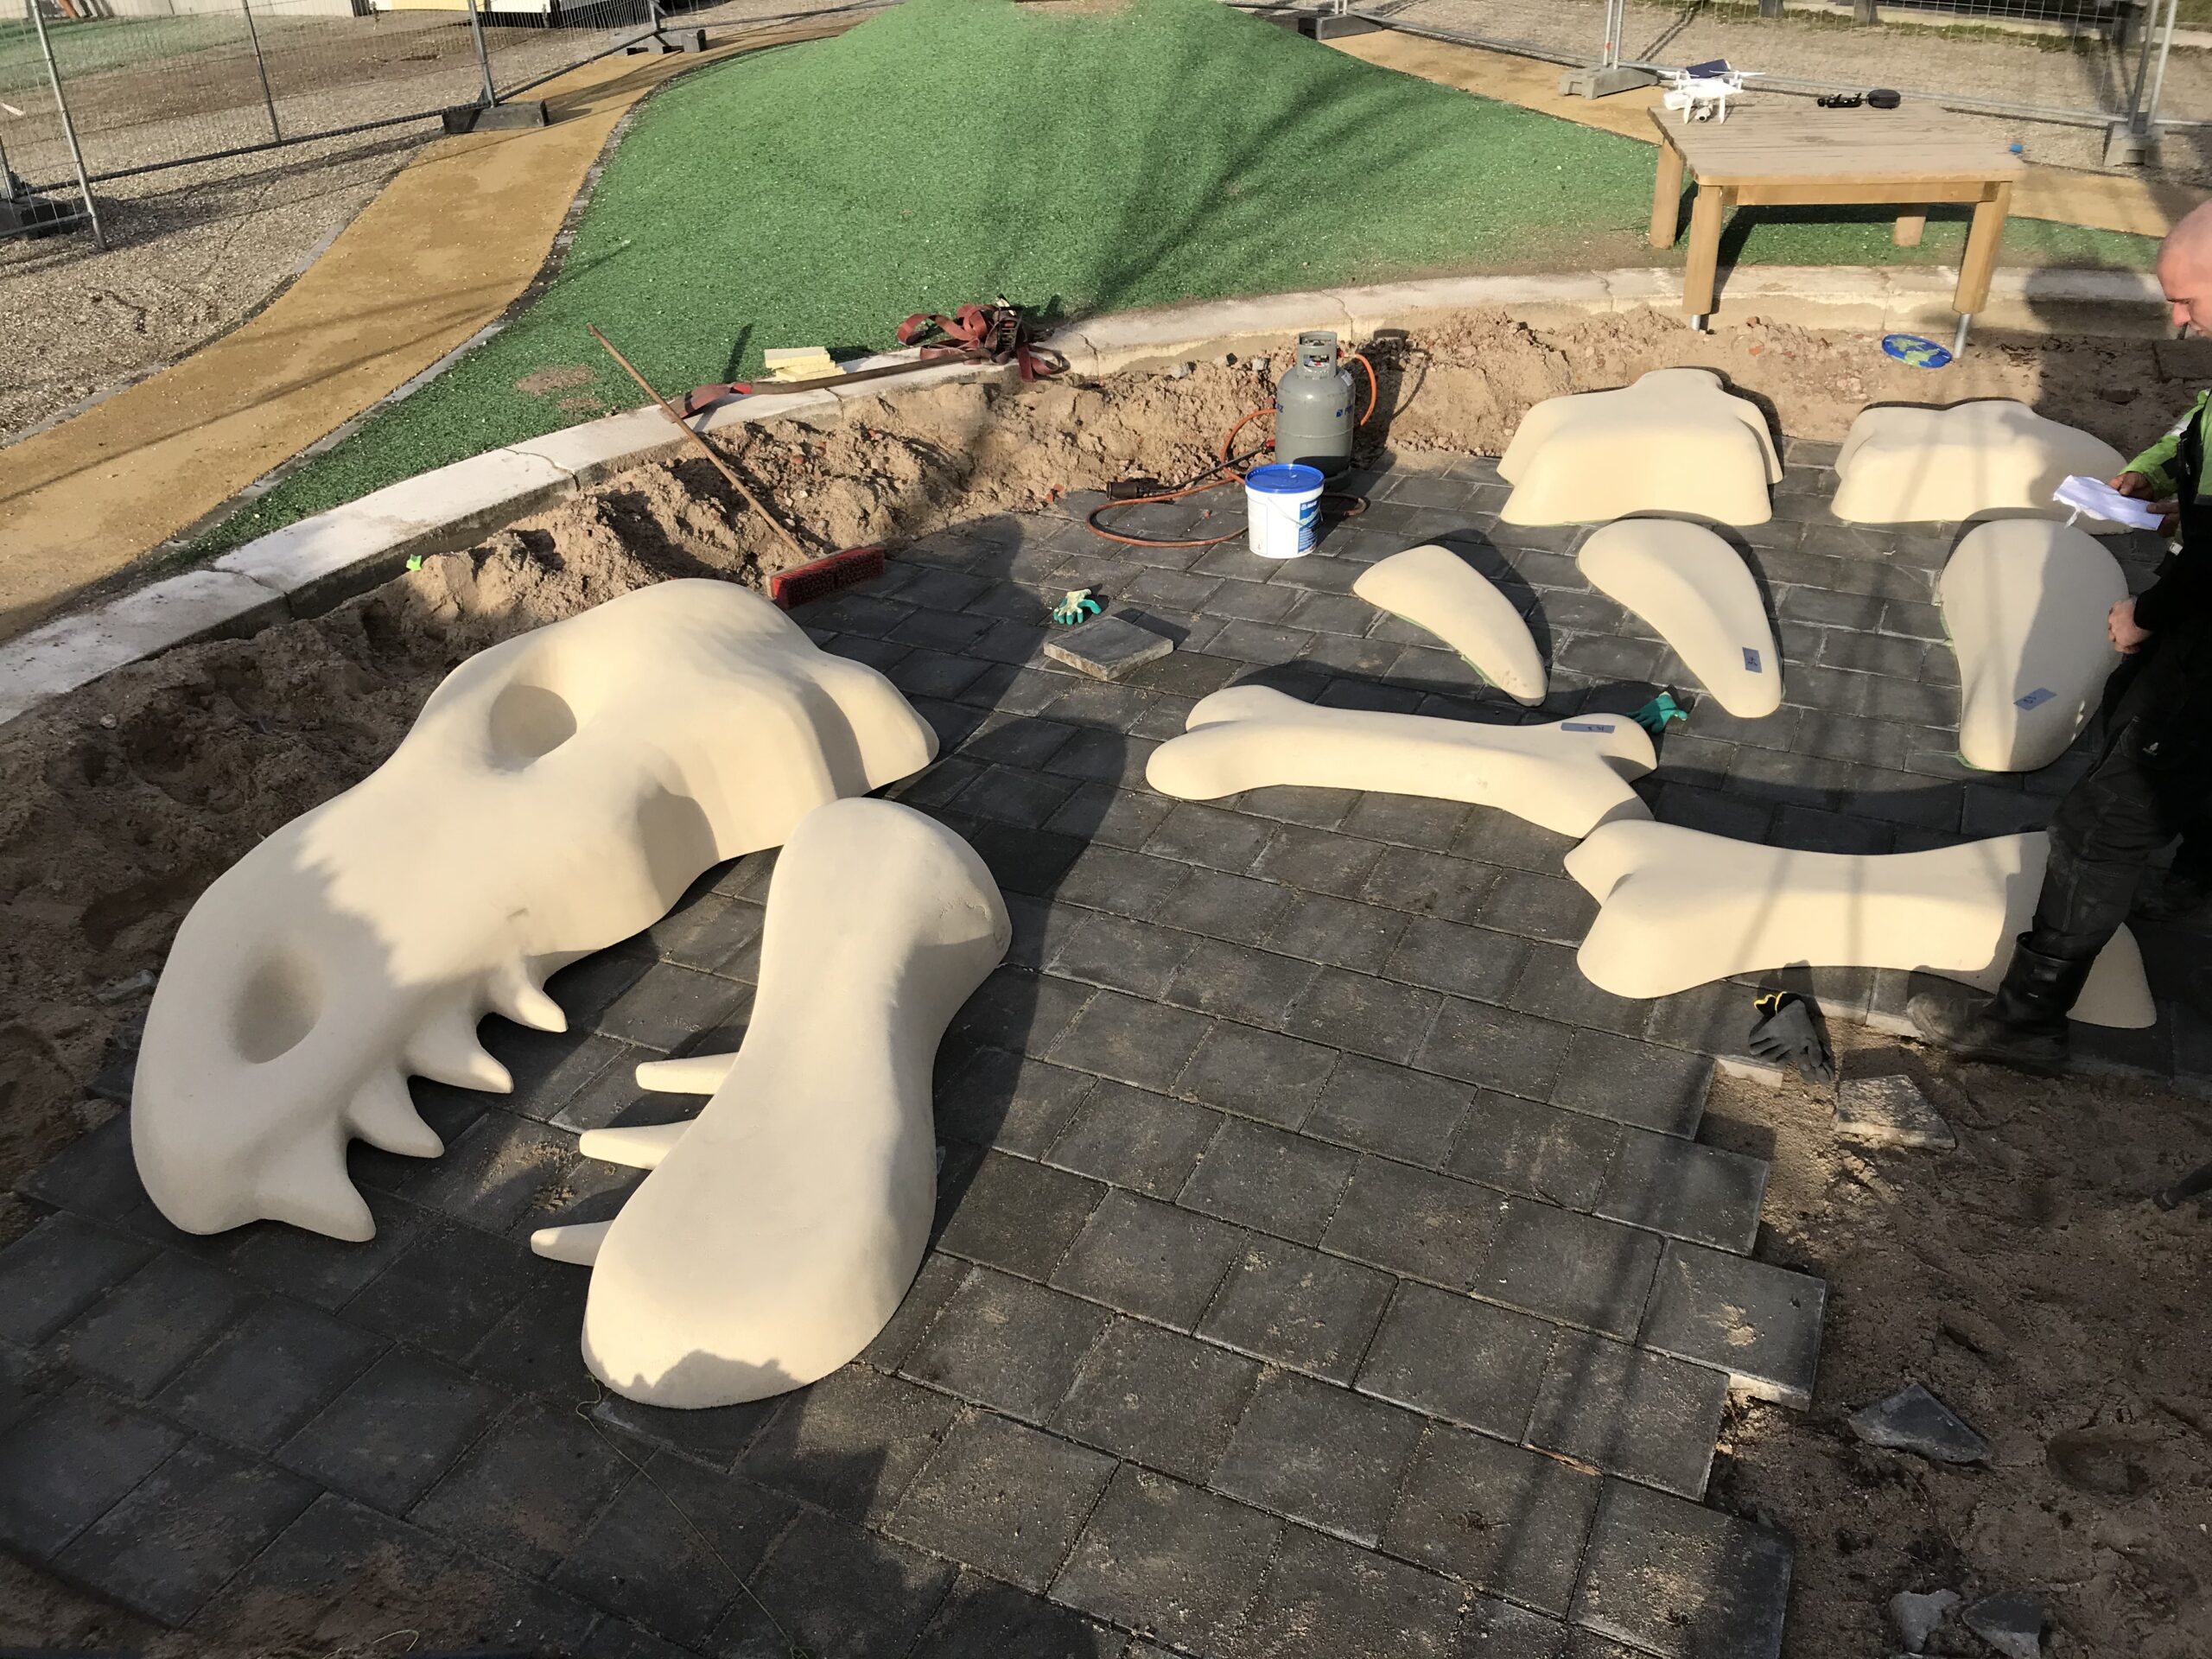 3d geprint dino skelet opgraving Rotterdam, zandbak met botten van dinosaurus, Branco van Danzigtpark, rubbervloer, EPDM rubber, speeltuin, speelwaarde